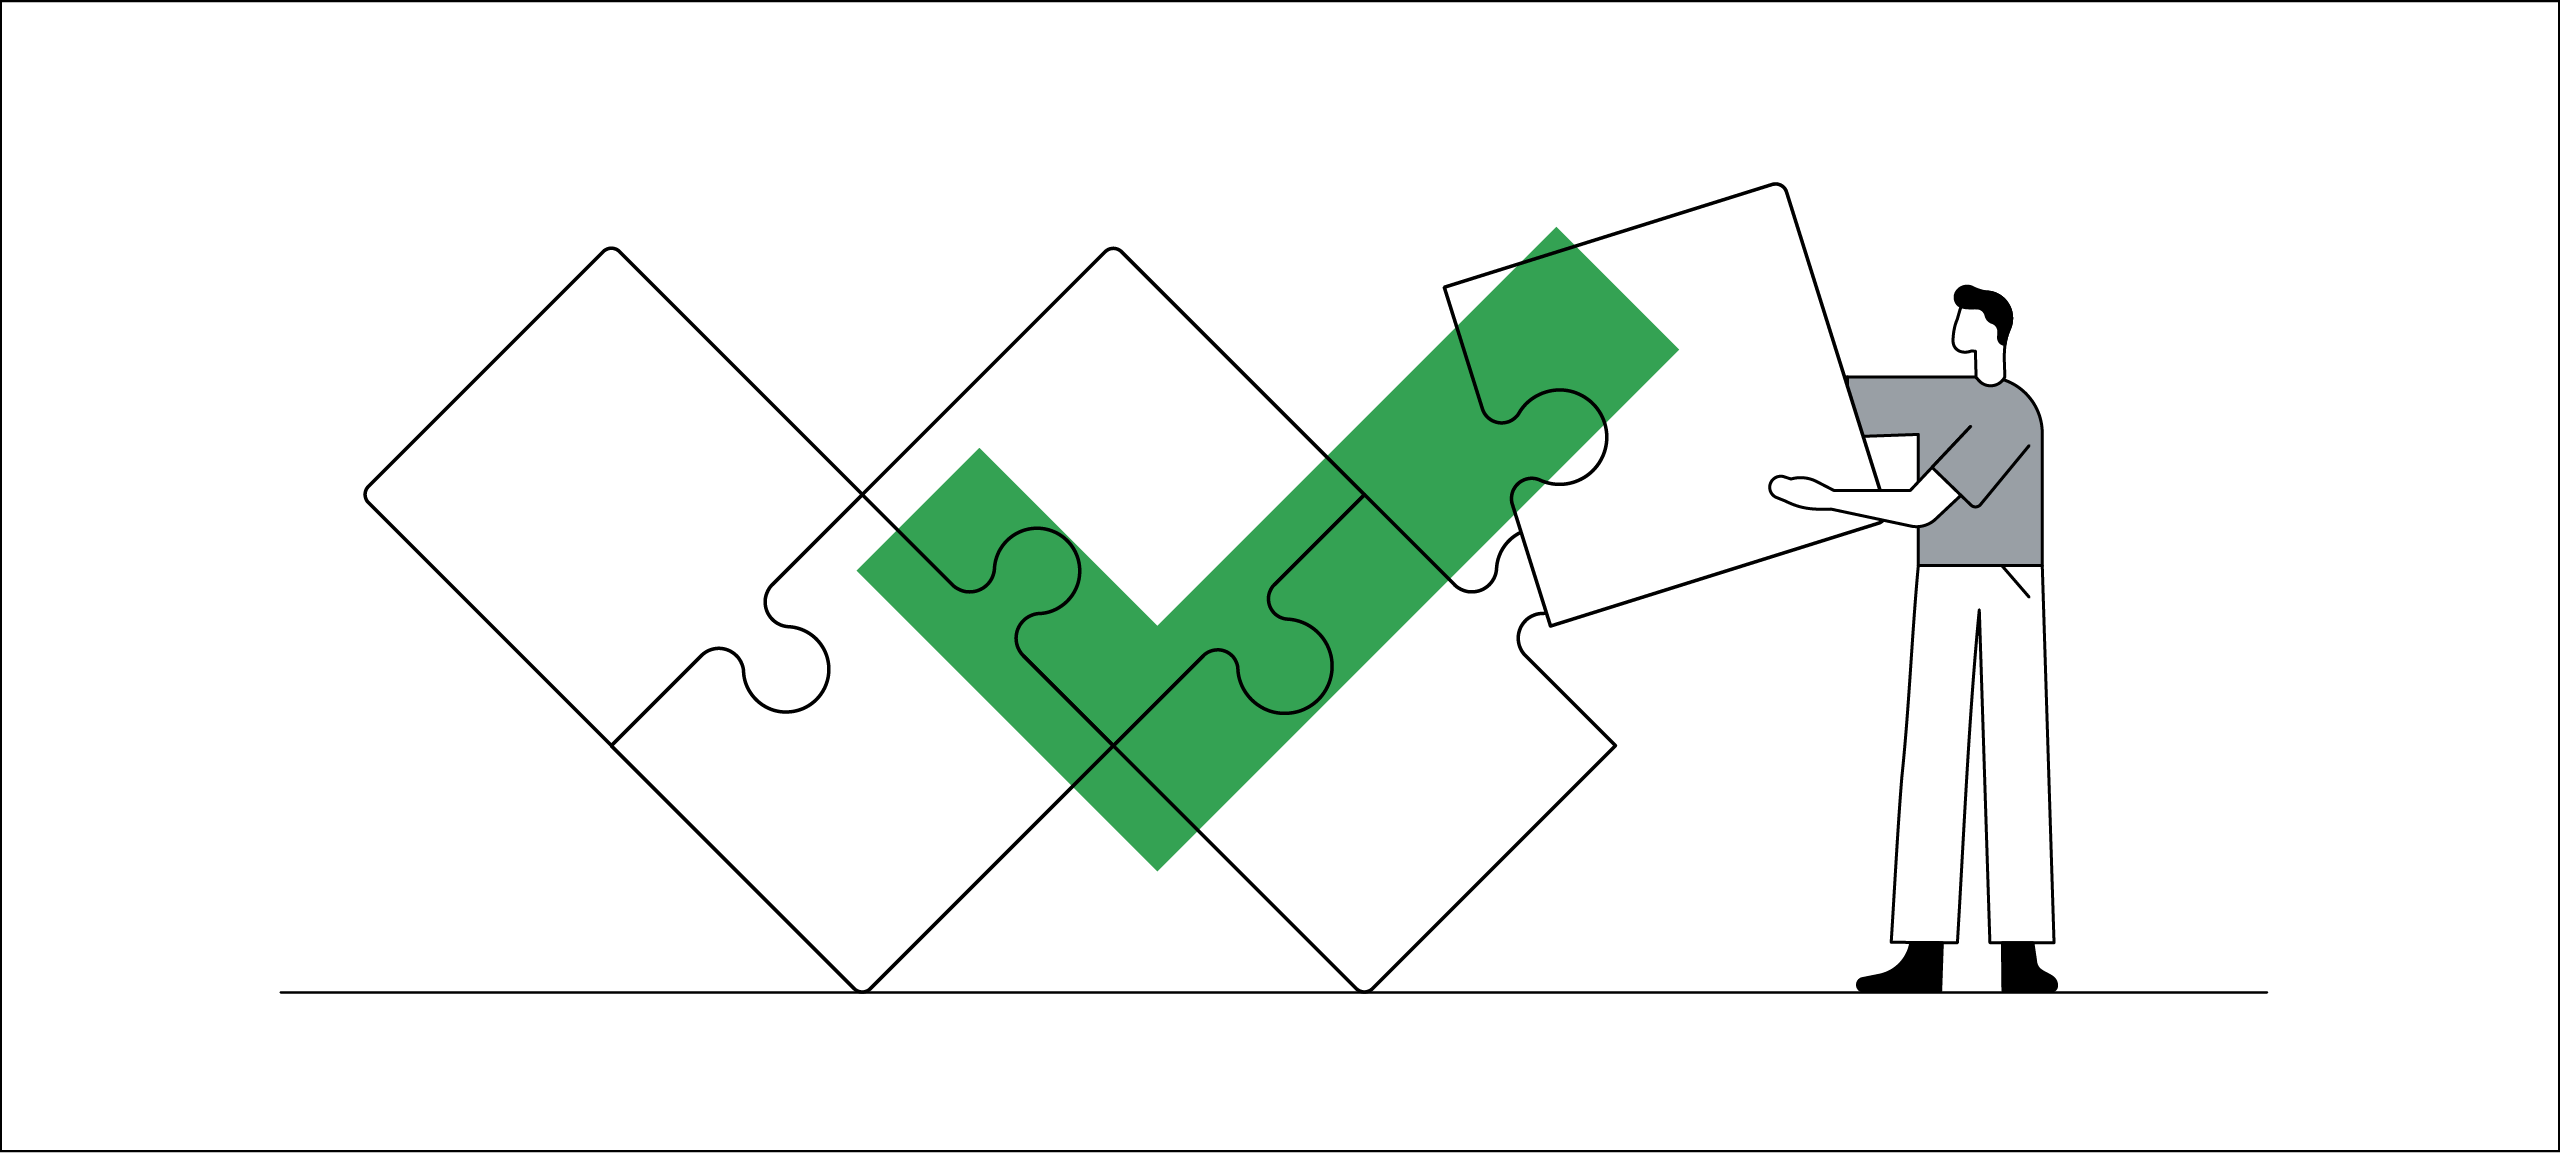 Un disegno a mano libera illustra la risoluzione dei problemi. Un uomo dai capelli neri aggiunge la tessera finale di un puzzle formato gigante. Un segno di spunta verde è sovrapposto al puzzle a forma di W per indicare che è stato completato.